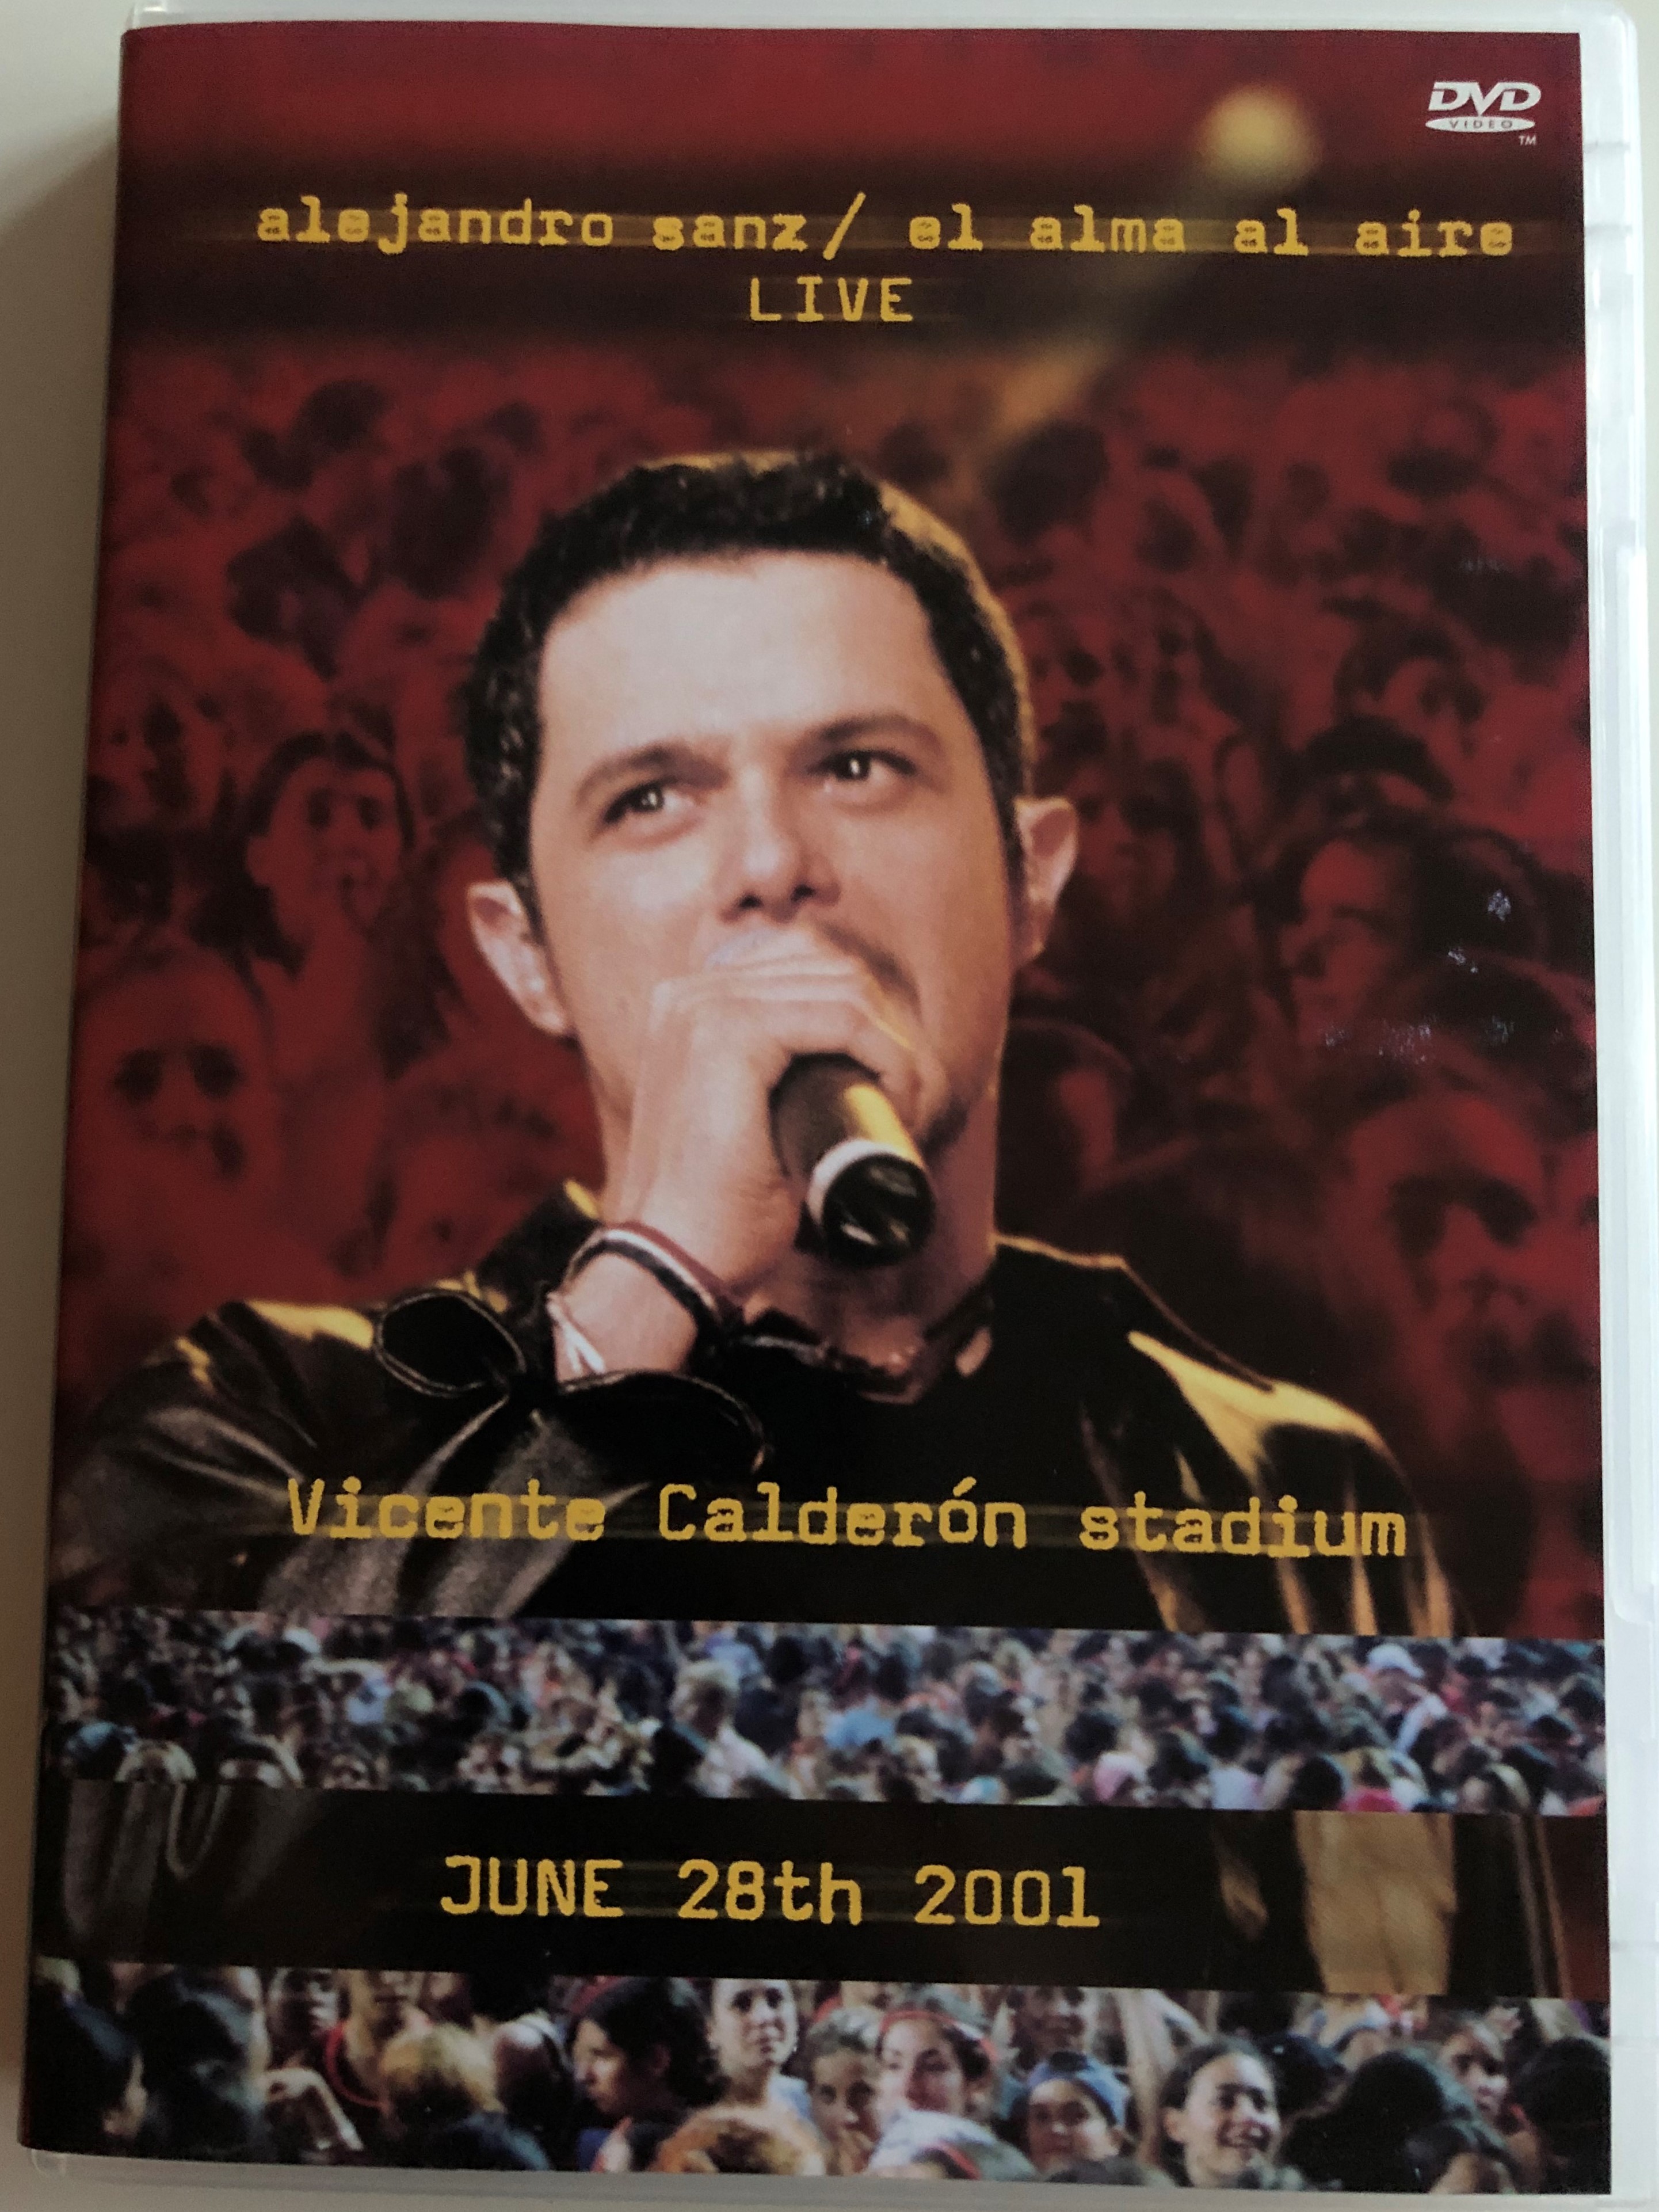 Alejandro Sanz - El alma al aire LIVE DVD 2001 1.JPG